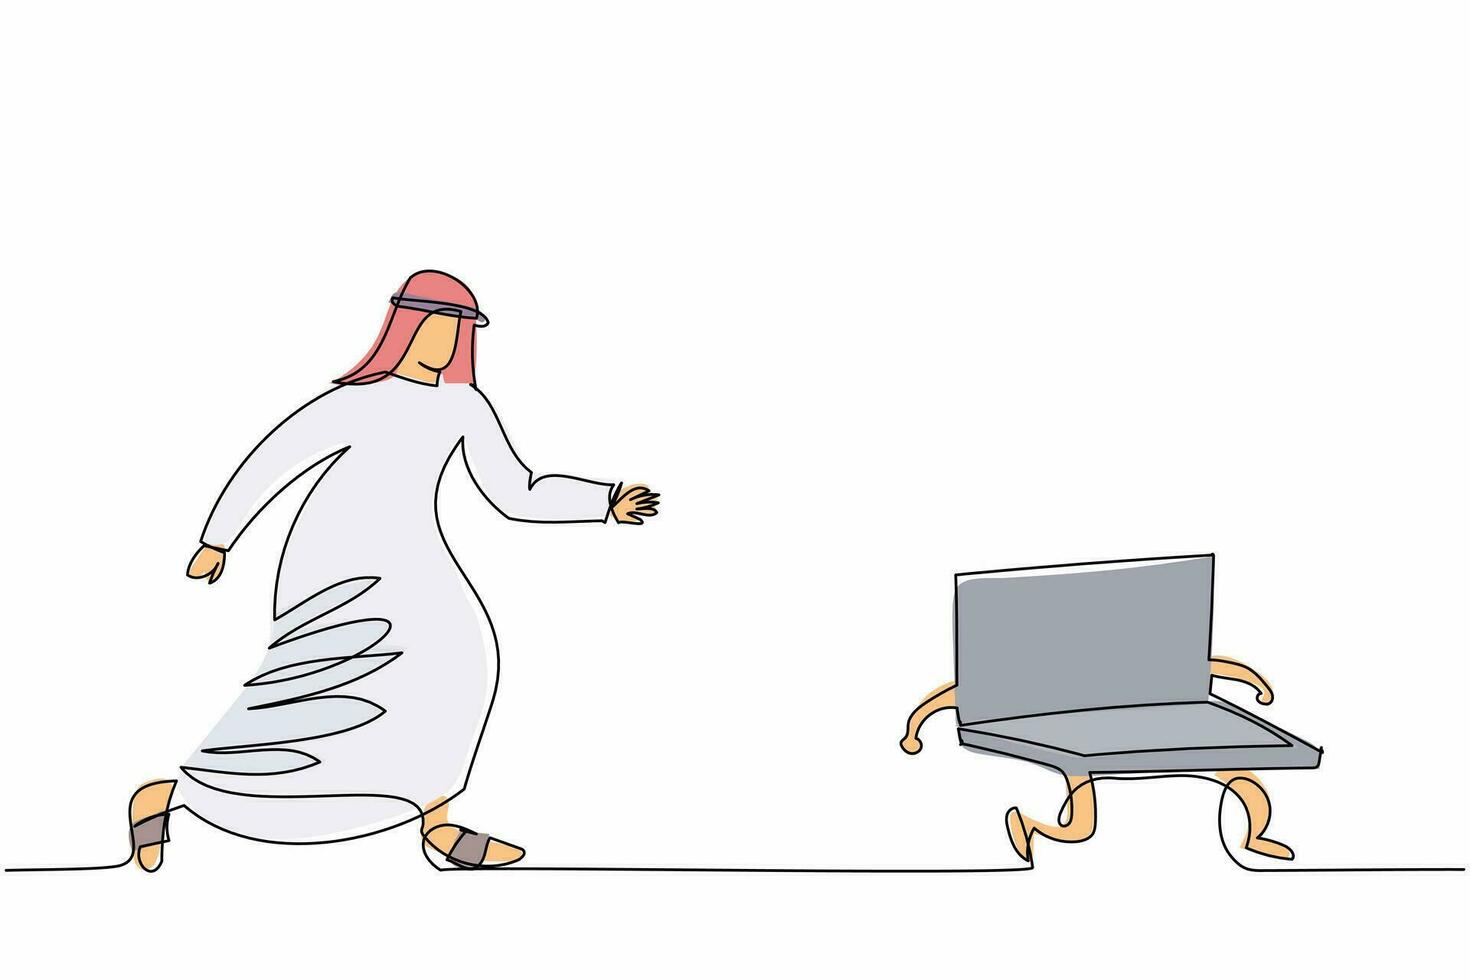 enkele een lijntekening Arabische zakenman die laptop achtervolgt. werknemer die op kantoor werkt met deadlines en taken die voortdurend worden nagestreefd. ononderbroken lijn ontwerp grafische vectorillustratie vector